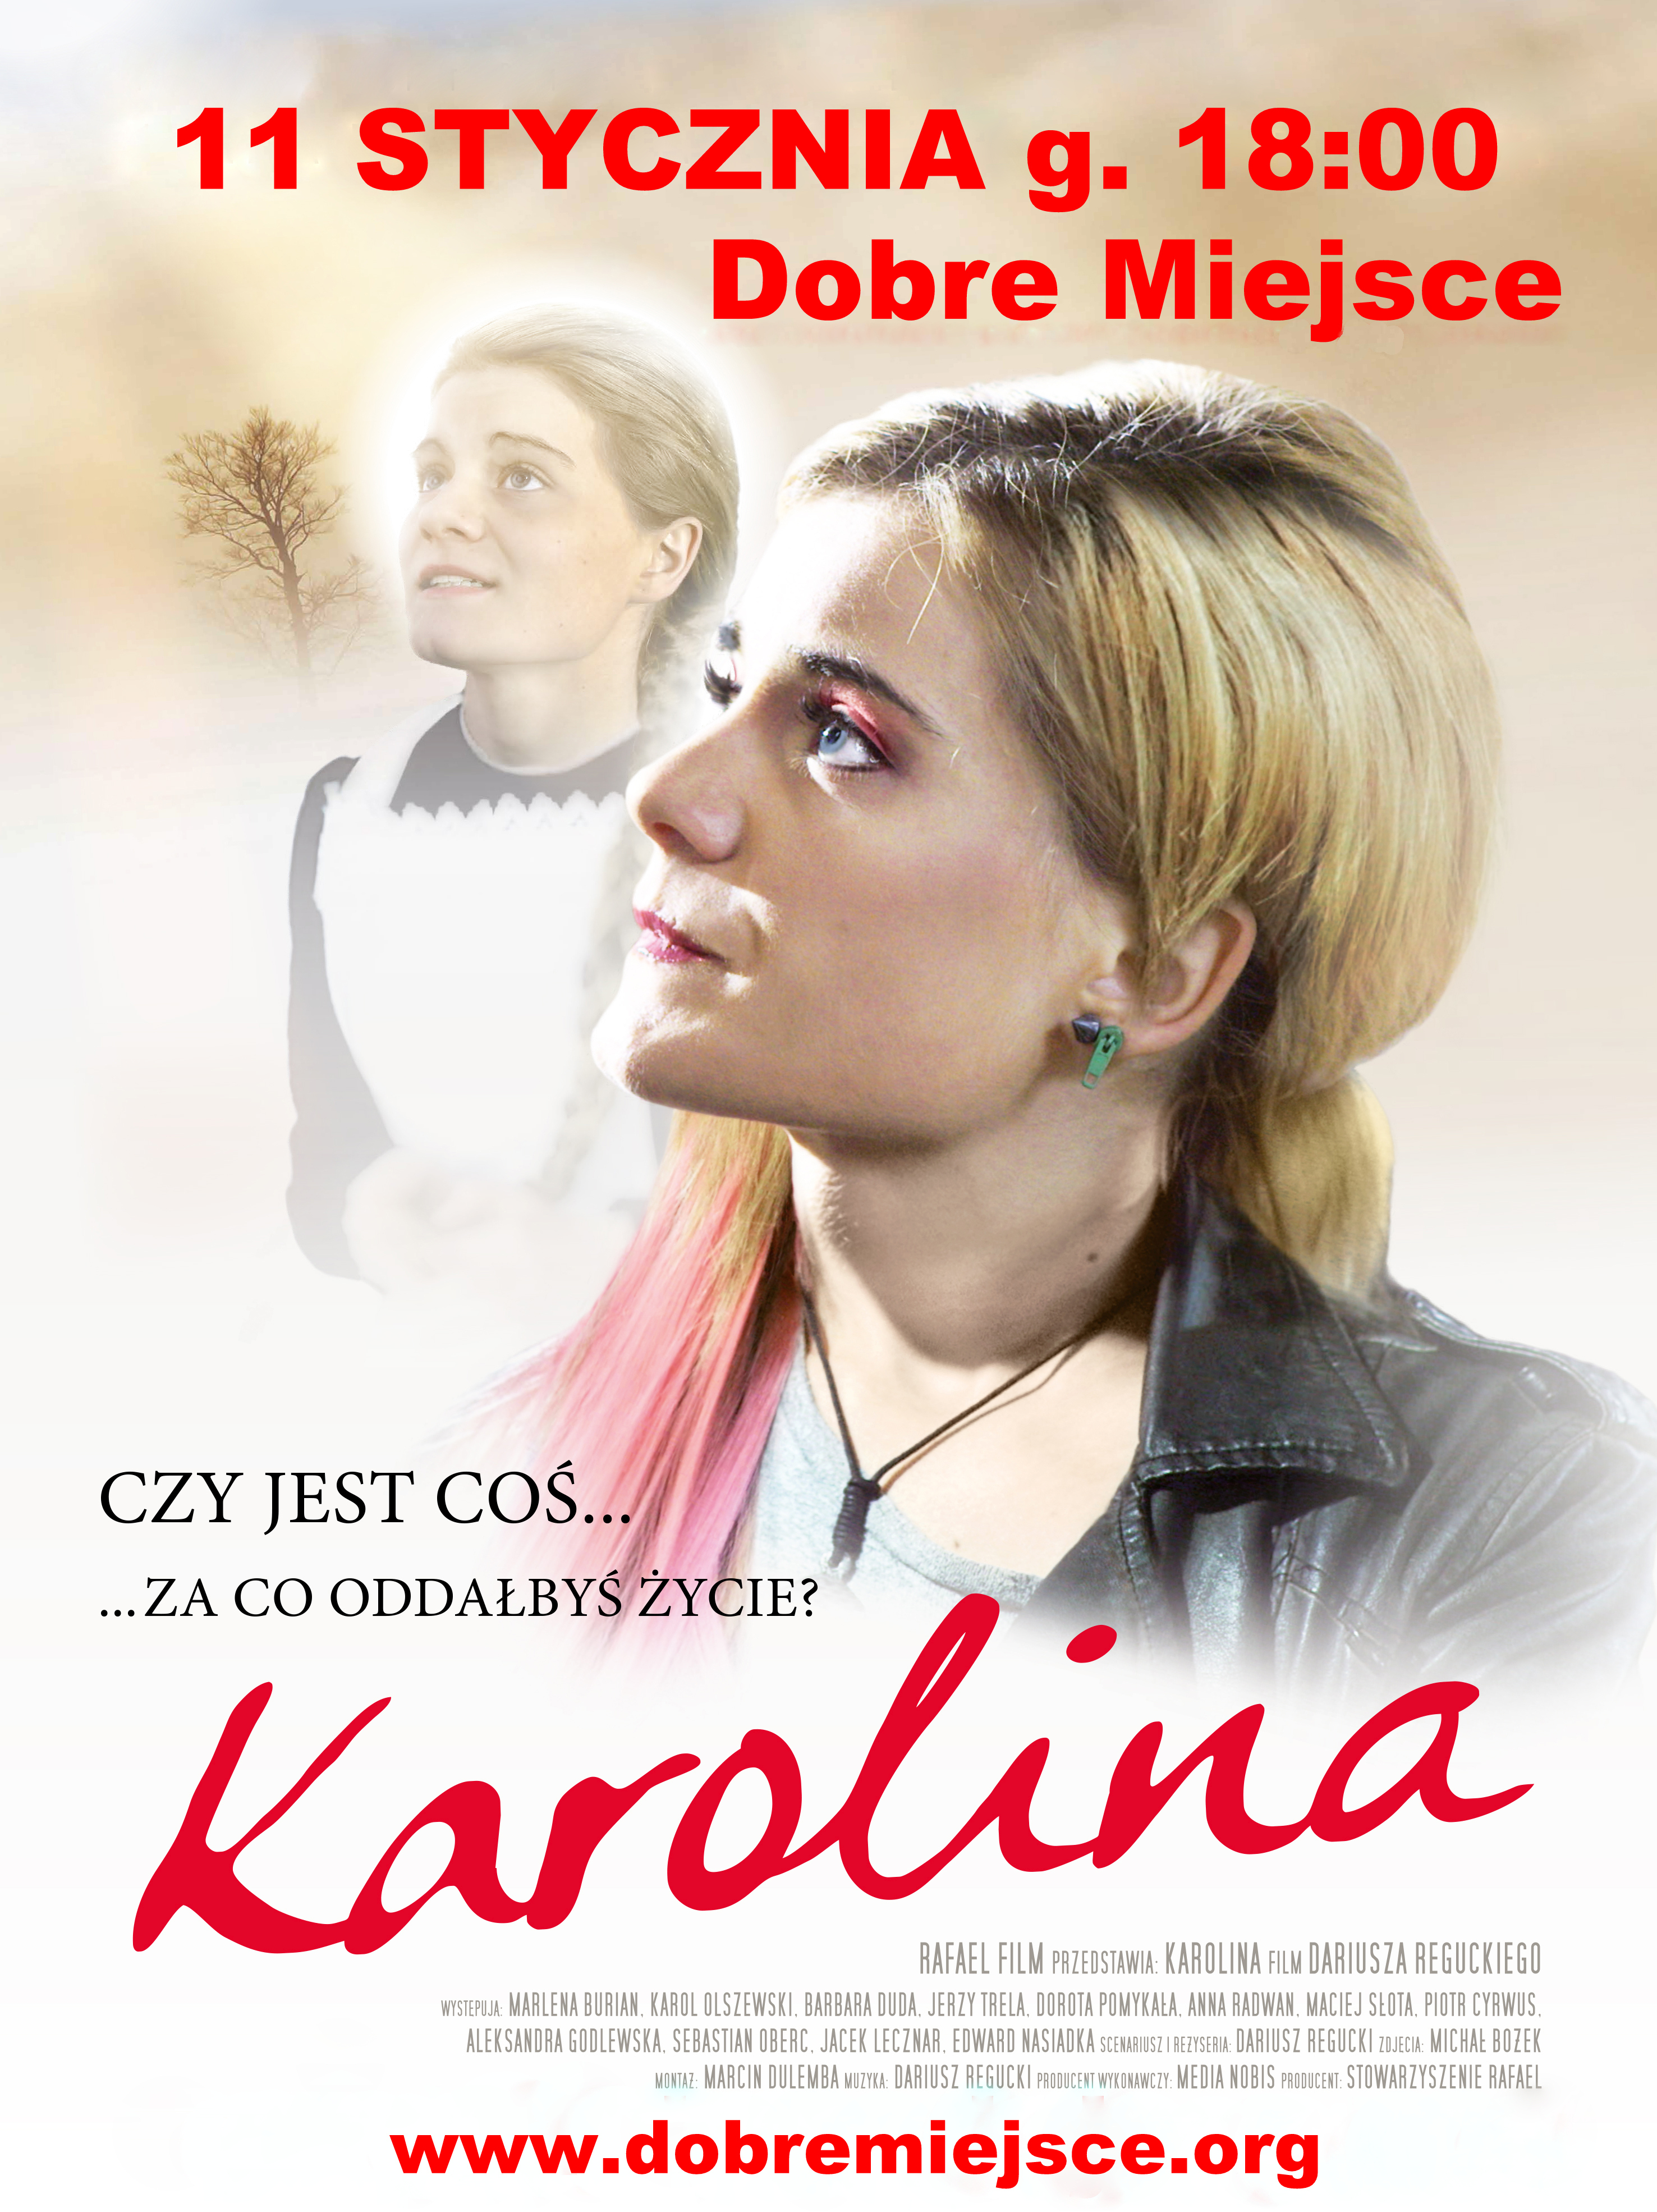 karolina-plakat_wiekszy1